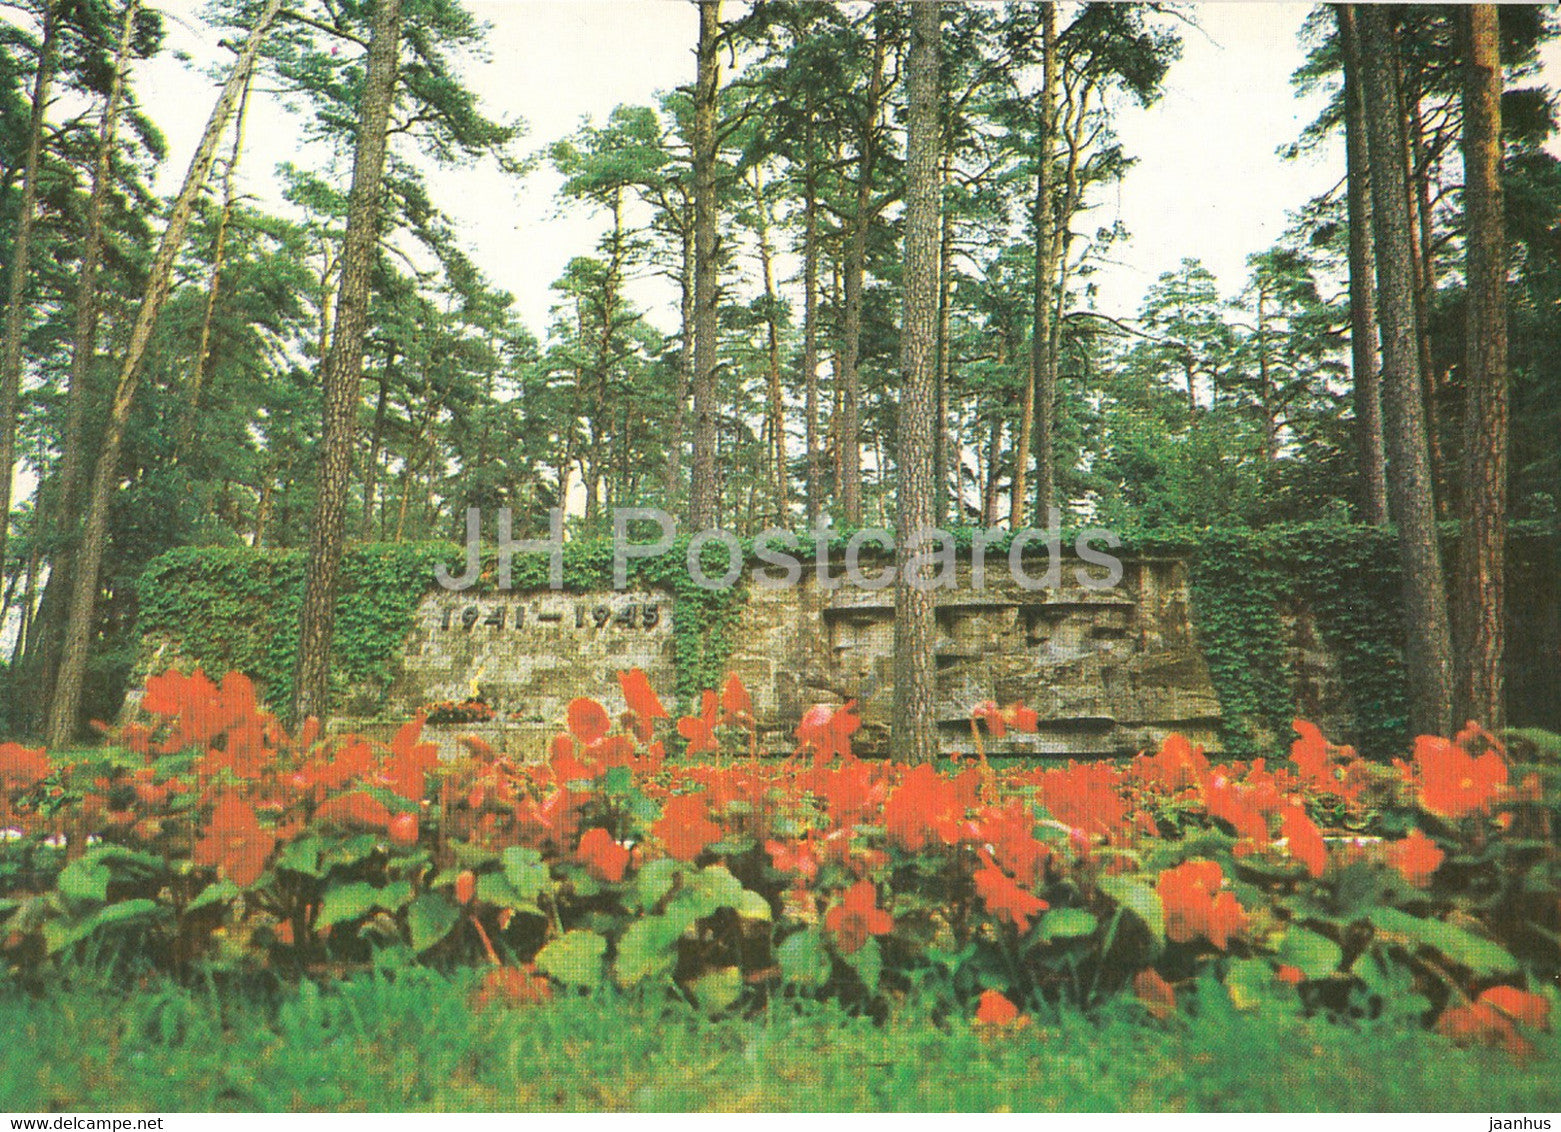 Jurmala - Fraternal cemetery at Bulduri - 1986 - Latvia USSR - unused - JH Postcards